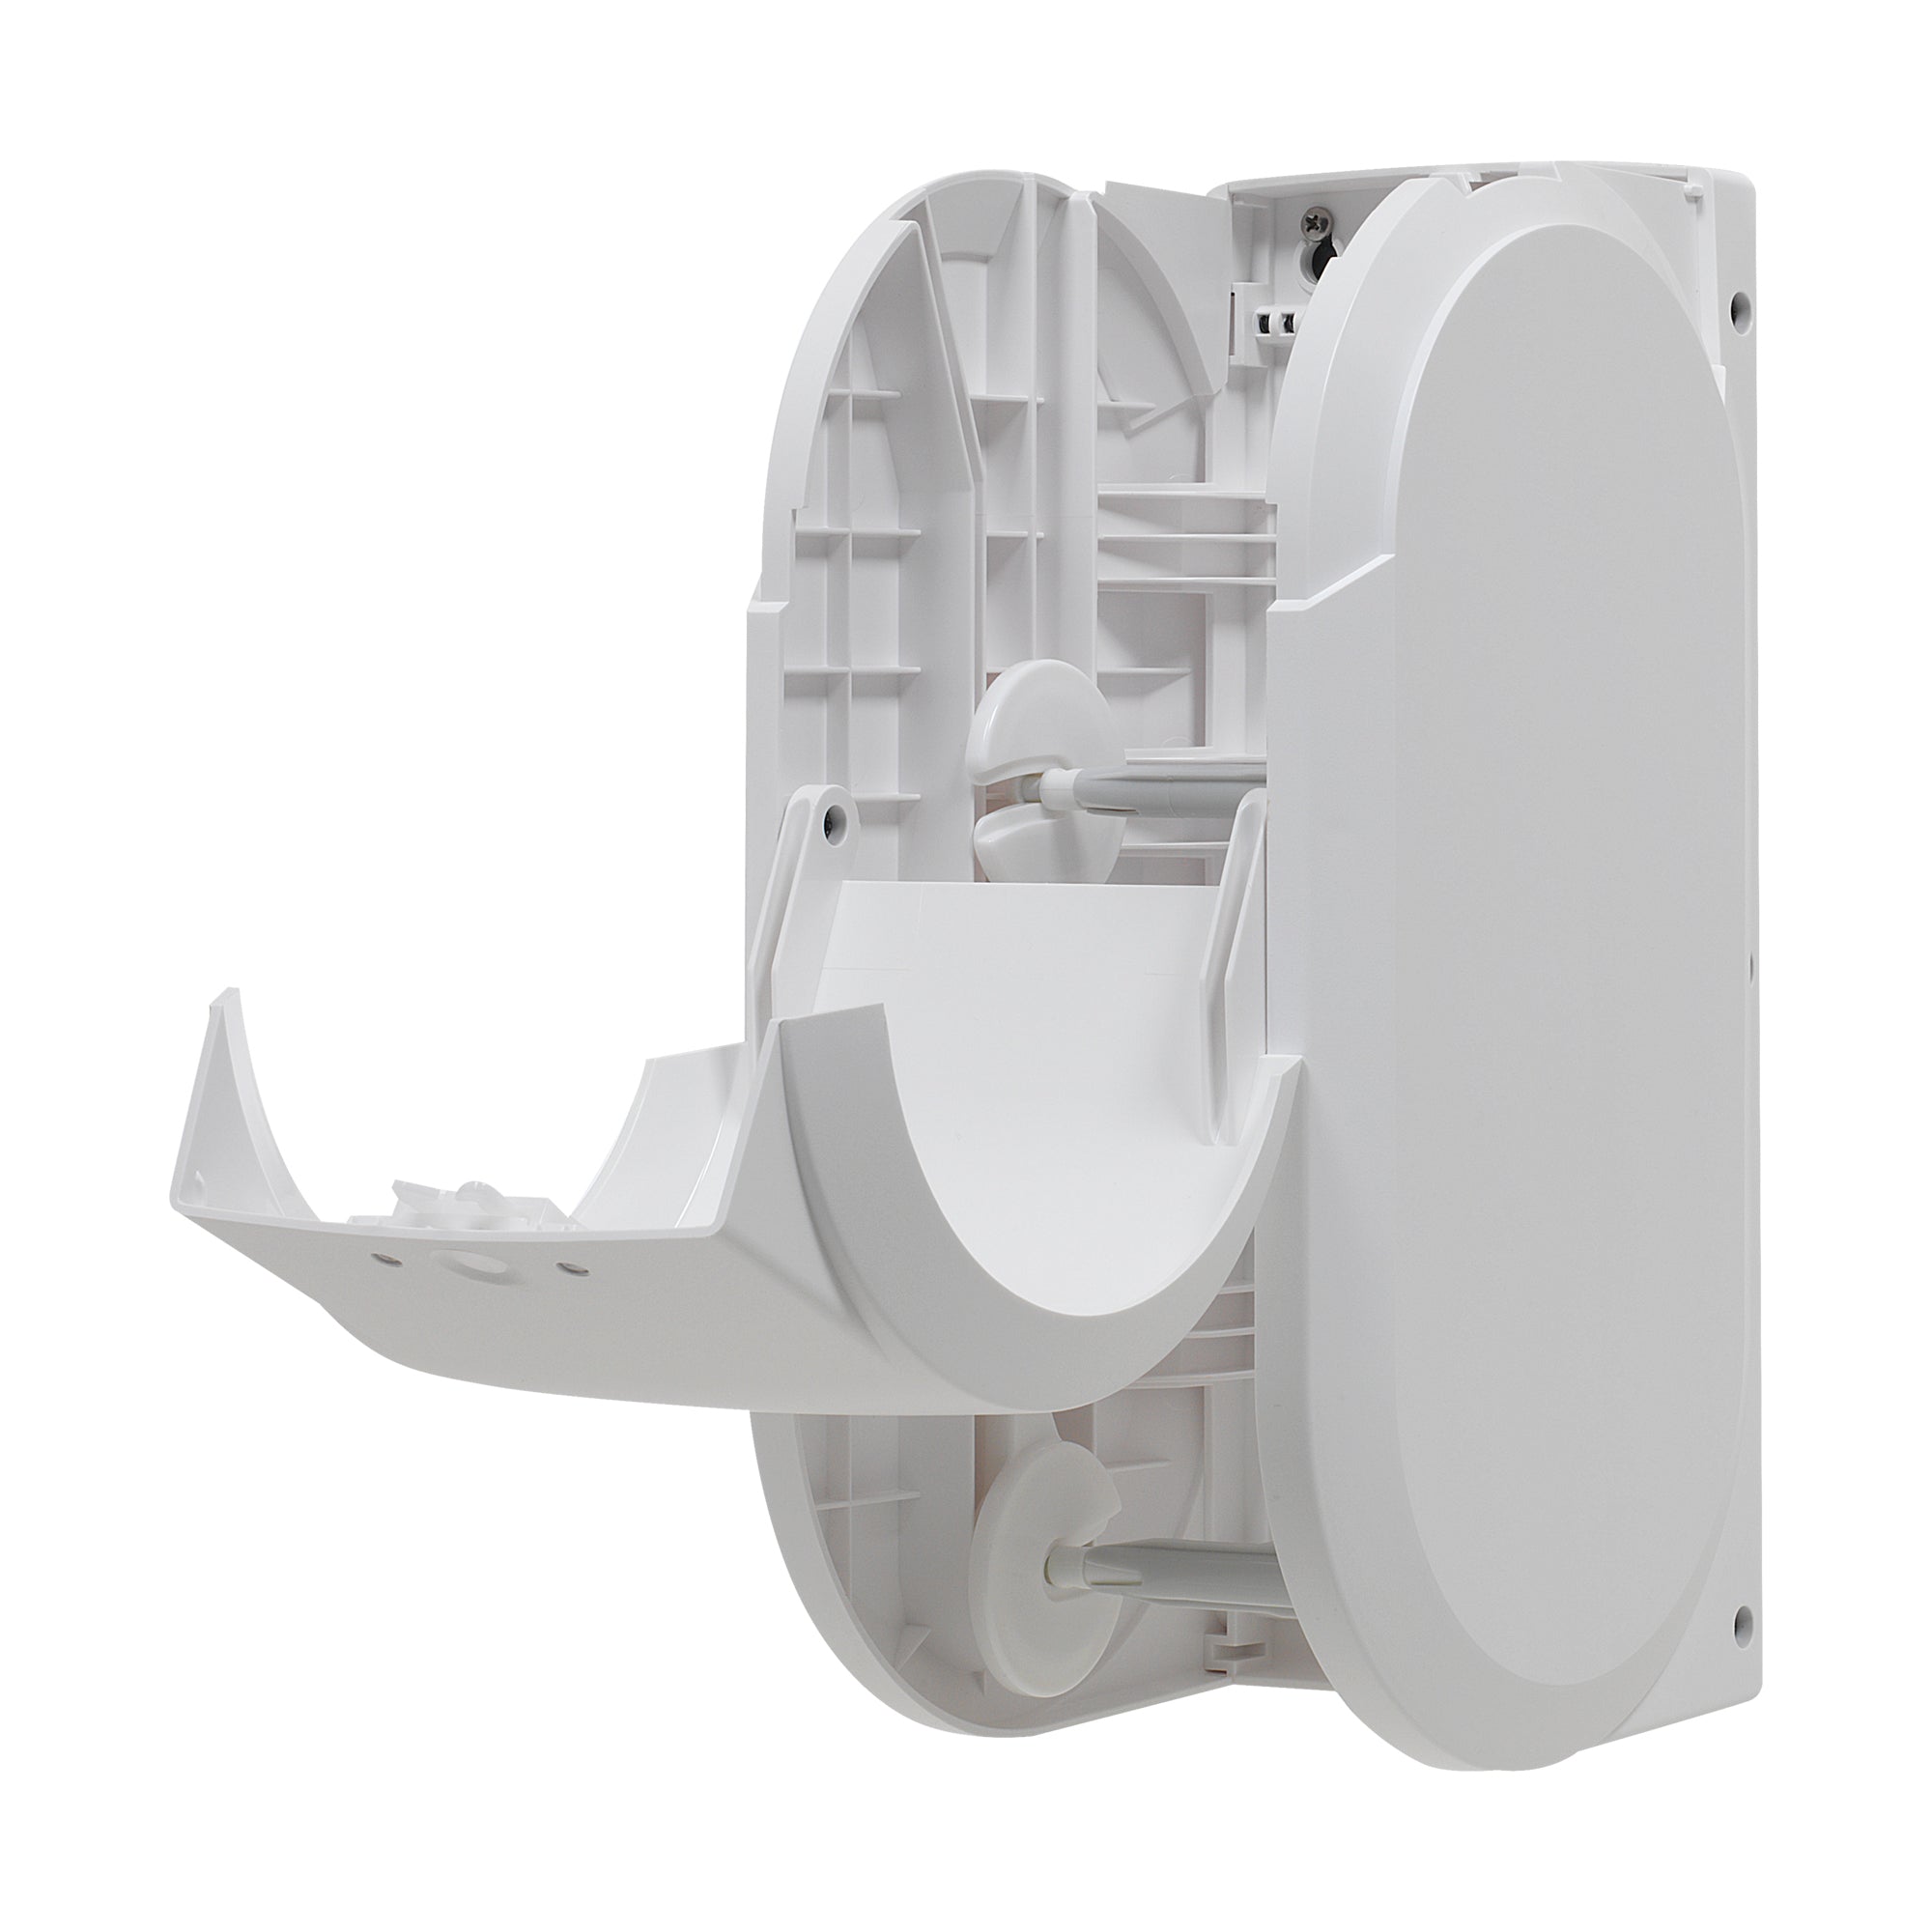 מתקן נייר טואלט בעל קיבולת גבוהה בעל 2 גלילים אנכיים ללא ליבות Compact® מבית GP PRO (ג'ורג'יה פסיפיק), לבן, מתקן אחד